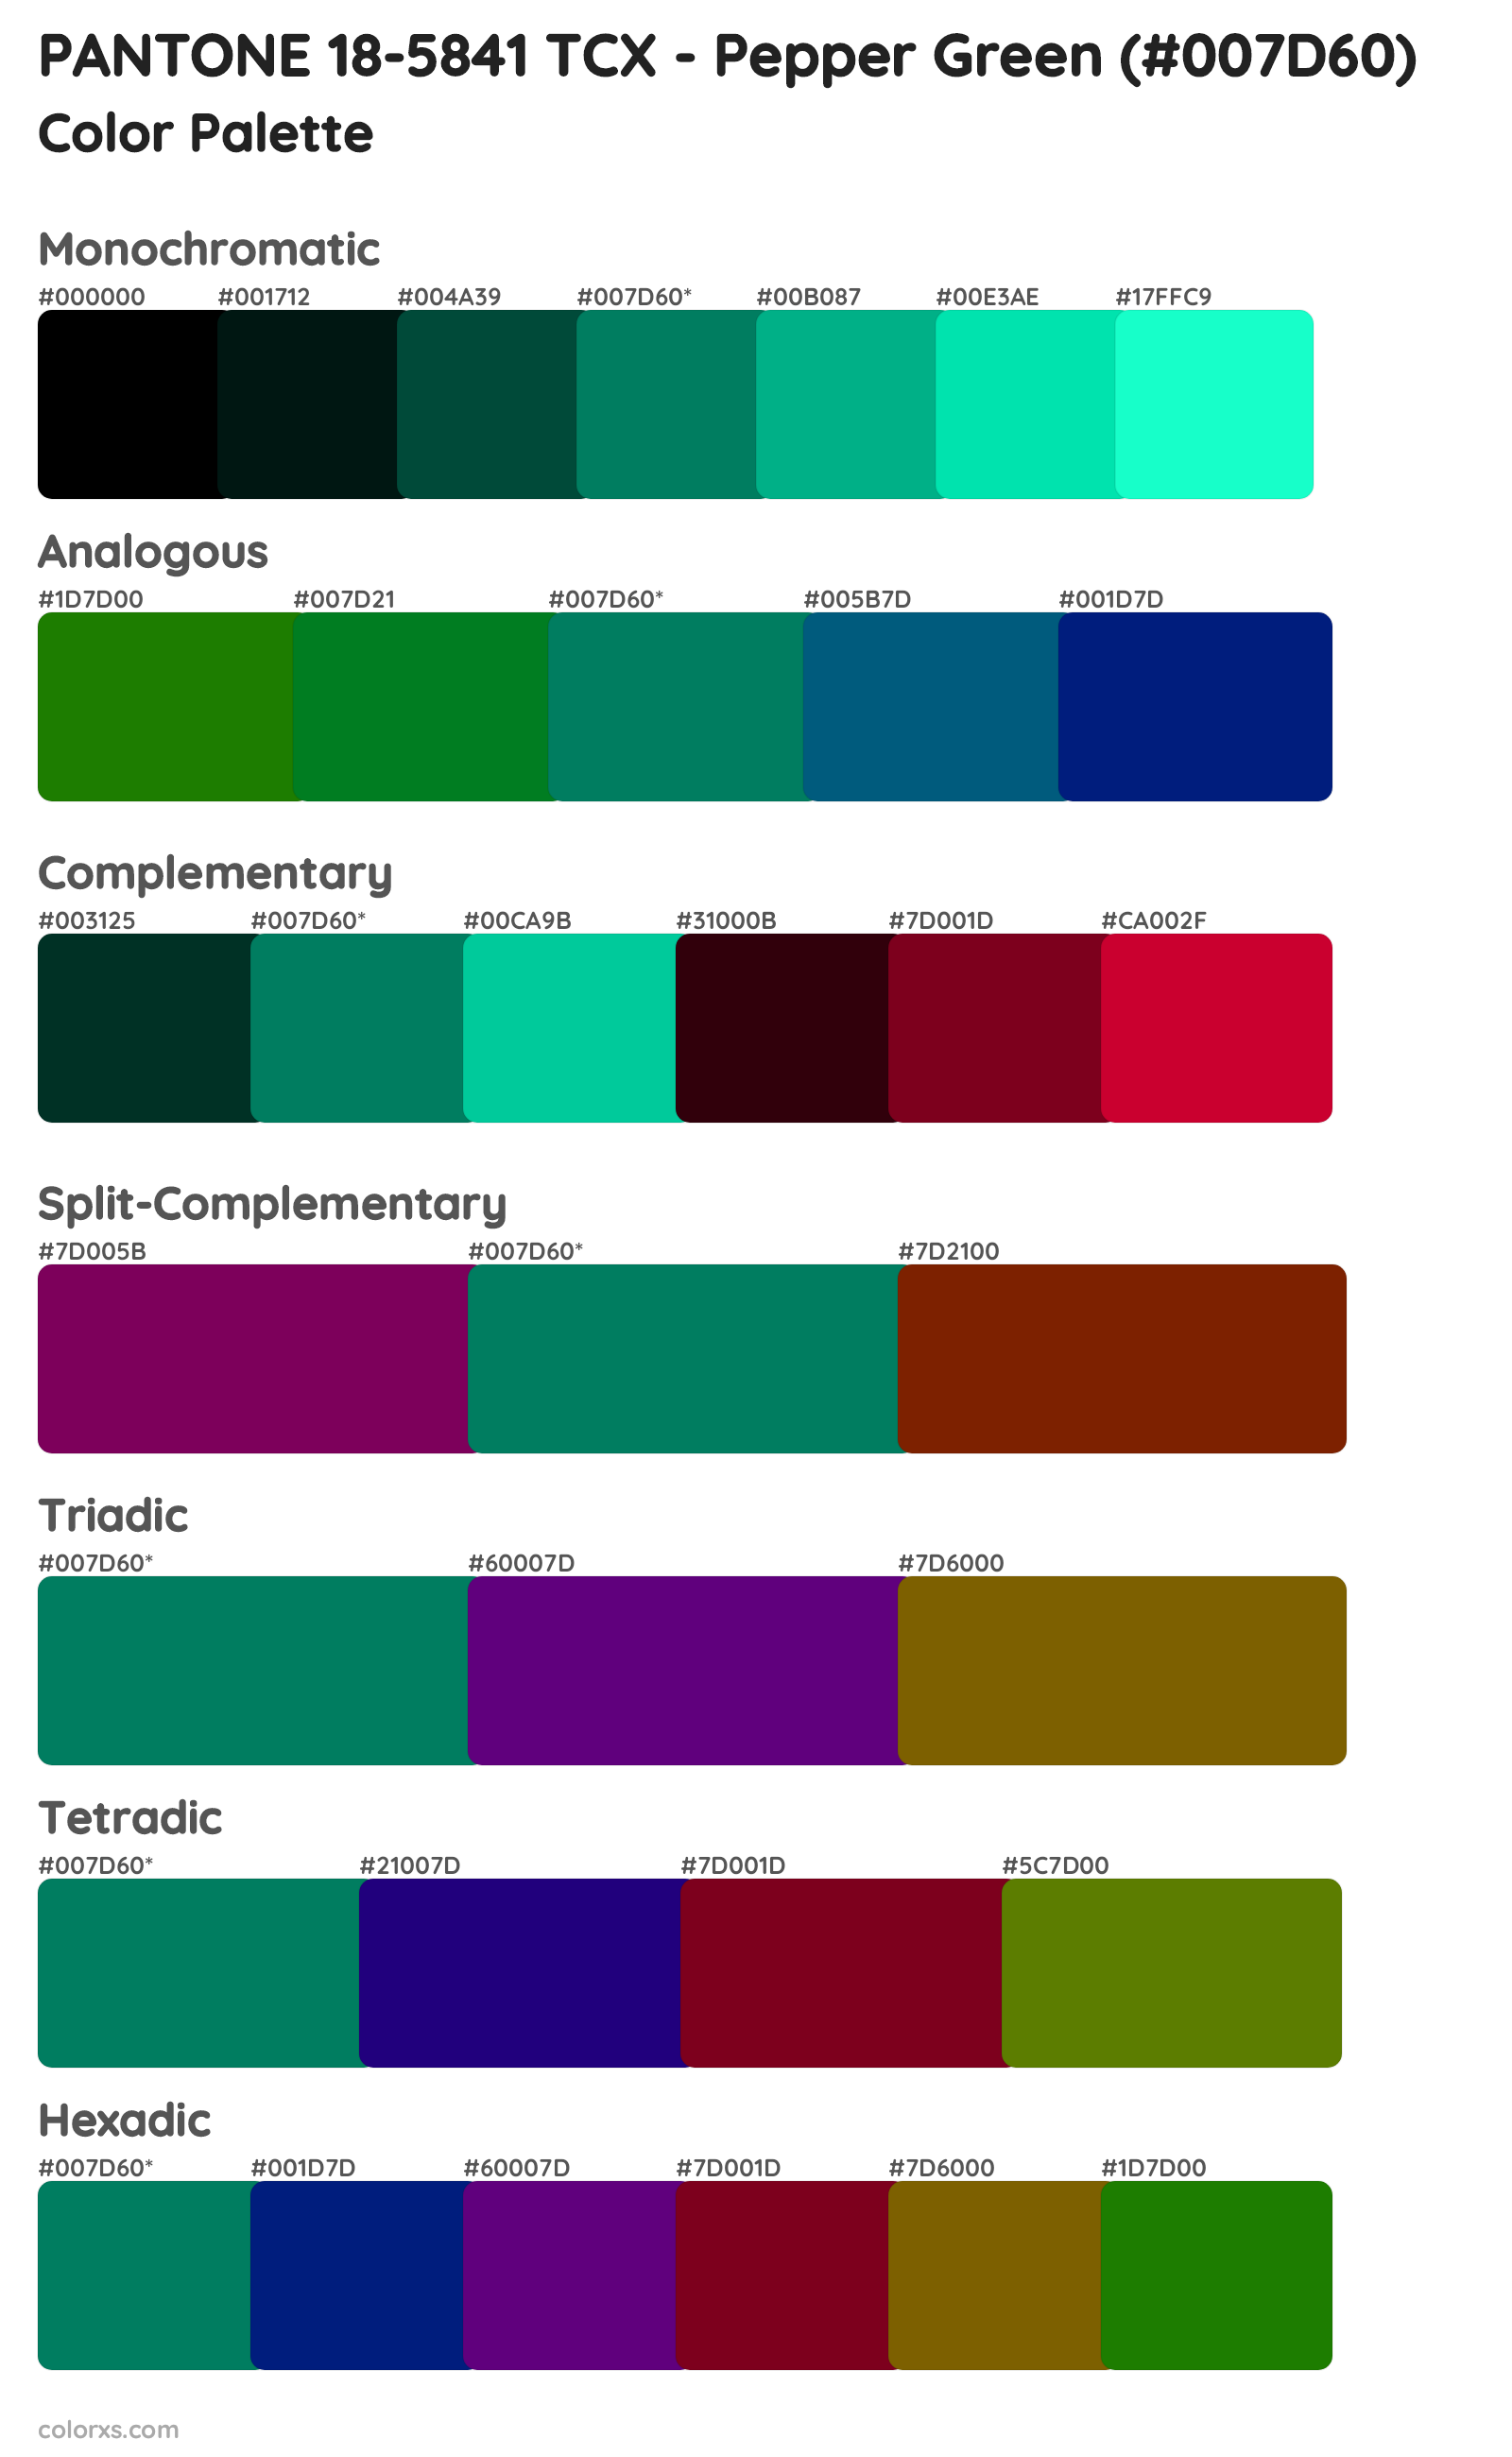 PANTONE 18-5841 TCX - Pepper Green Color Scheme Palettes